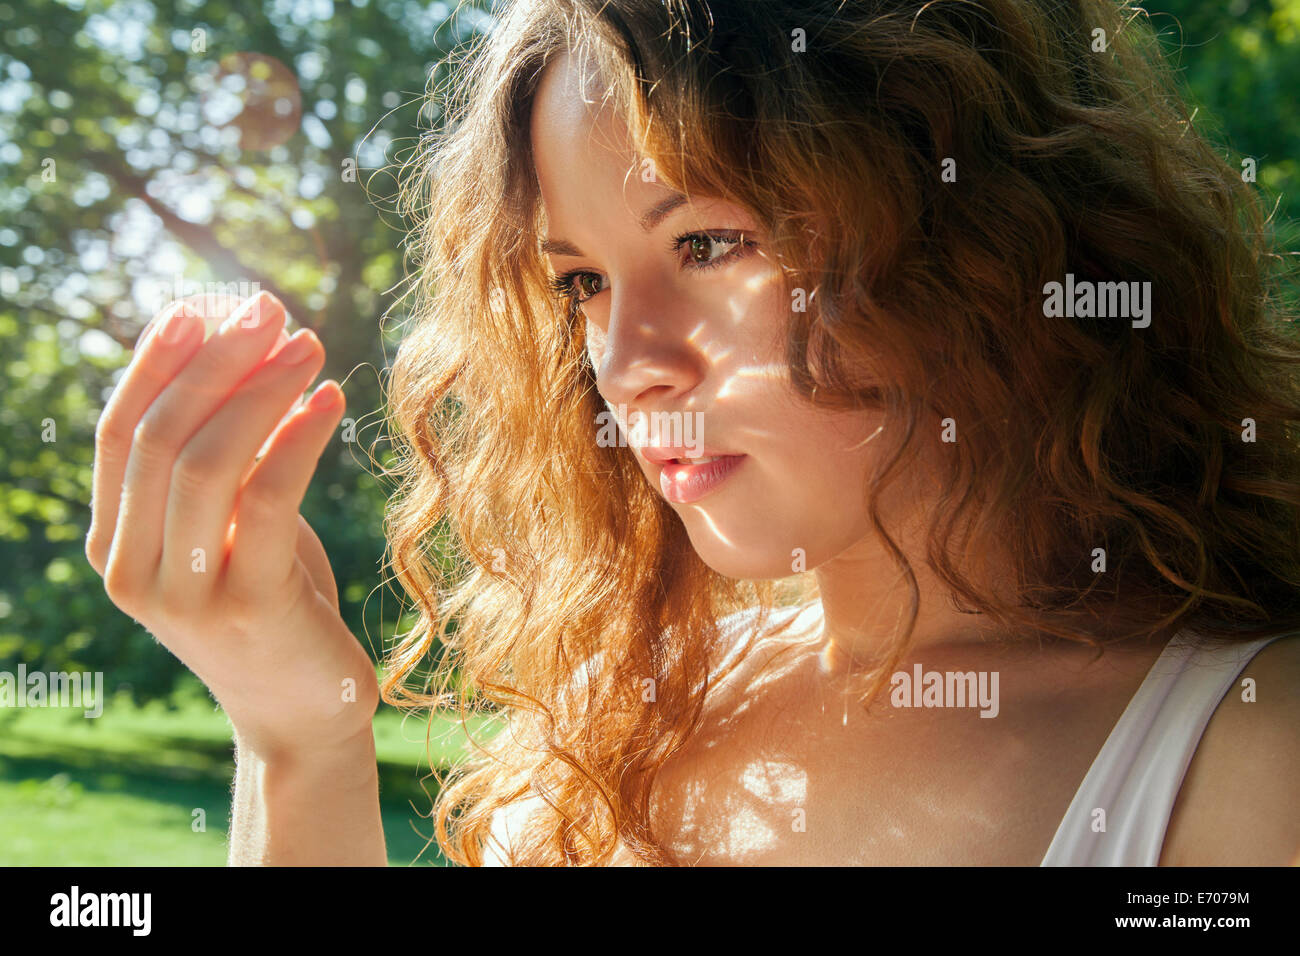 Ritratto di giovane donna guardando qualcosa a incandescente in mano Foto Stock